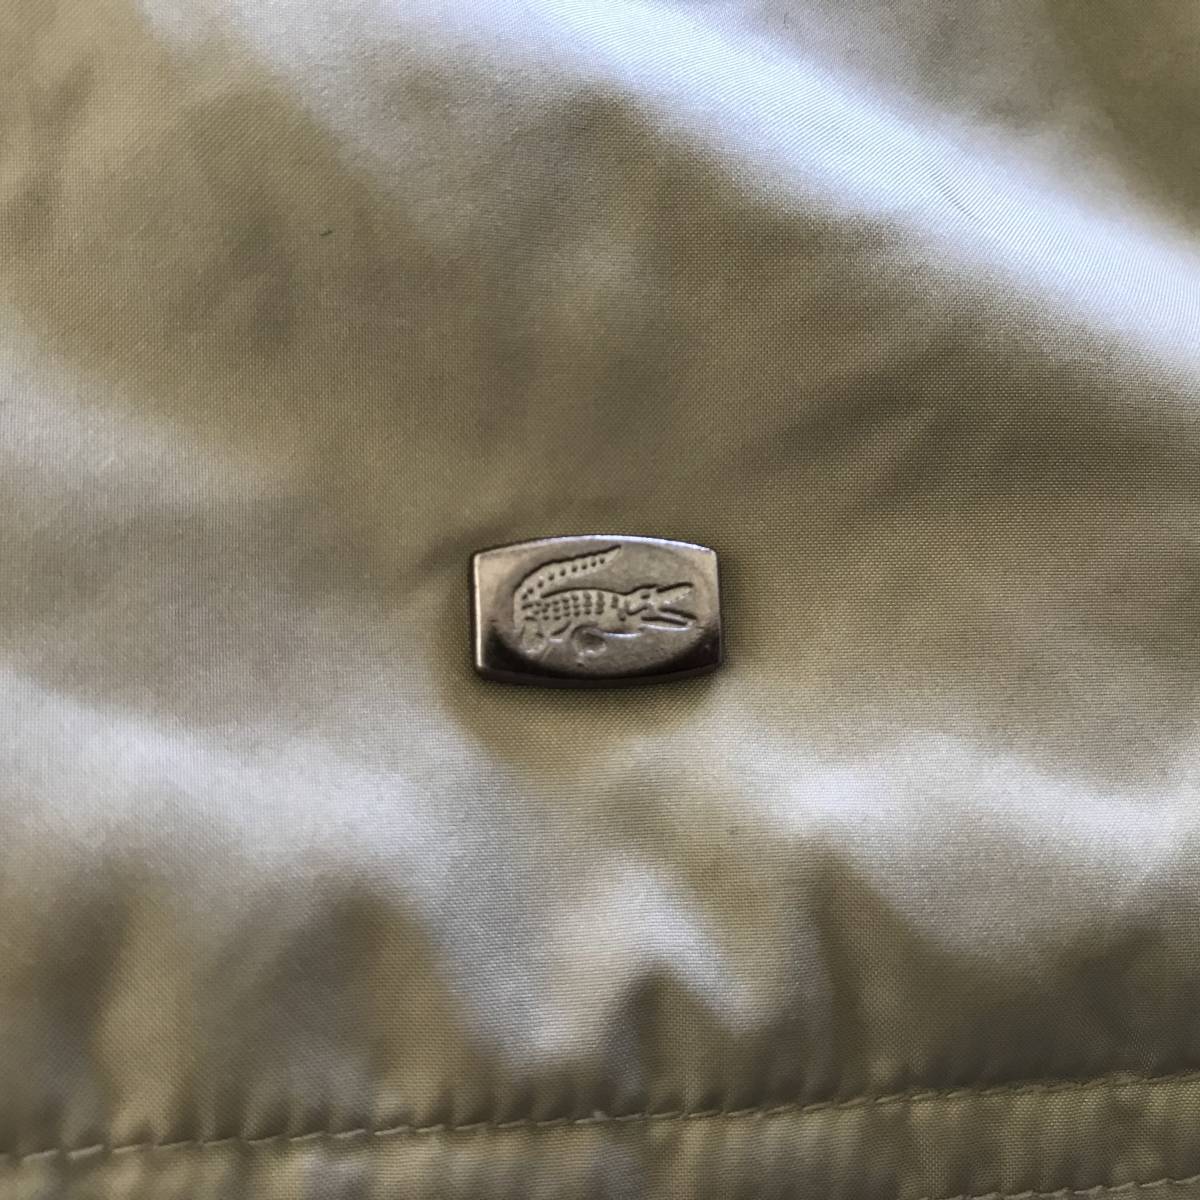 LACOSTE ラコステ メンズ 中綿ナイロンフルジップジャケット メタルワニワッペン付き 良品 size 50/3_画像4